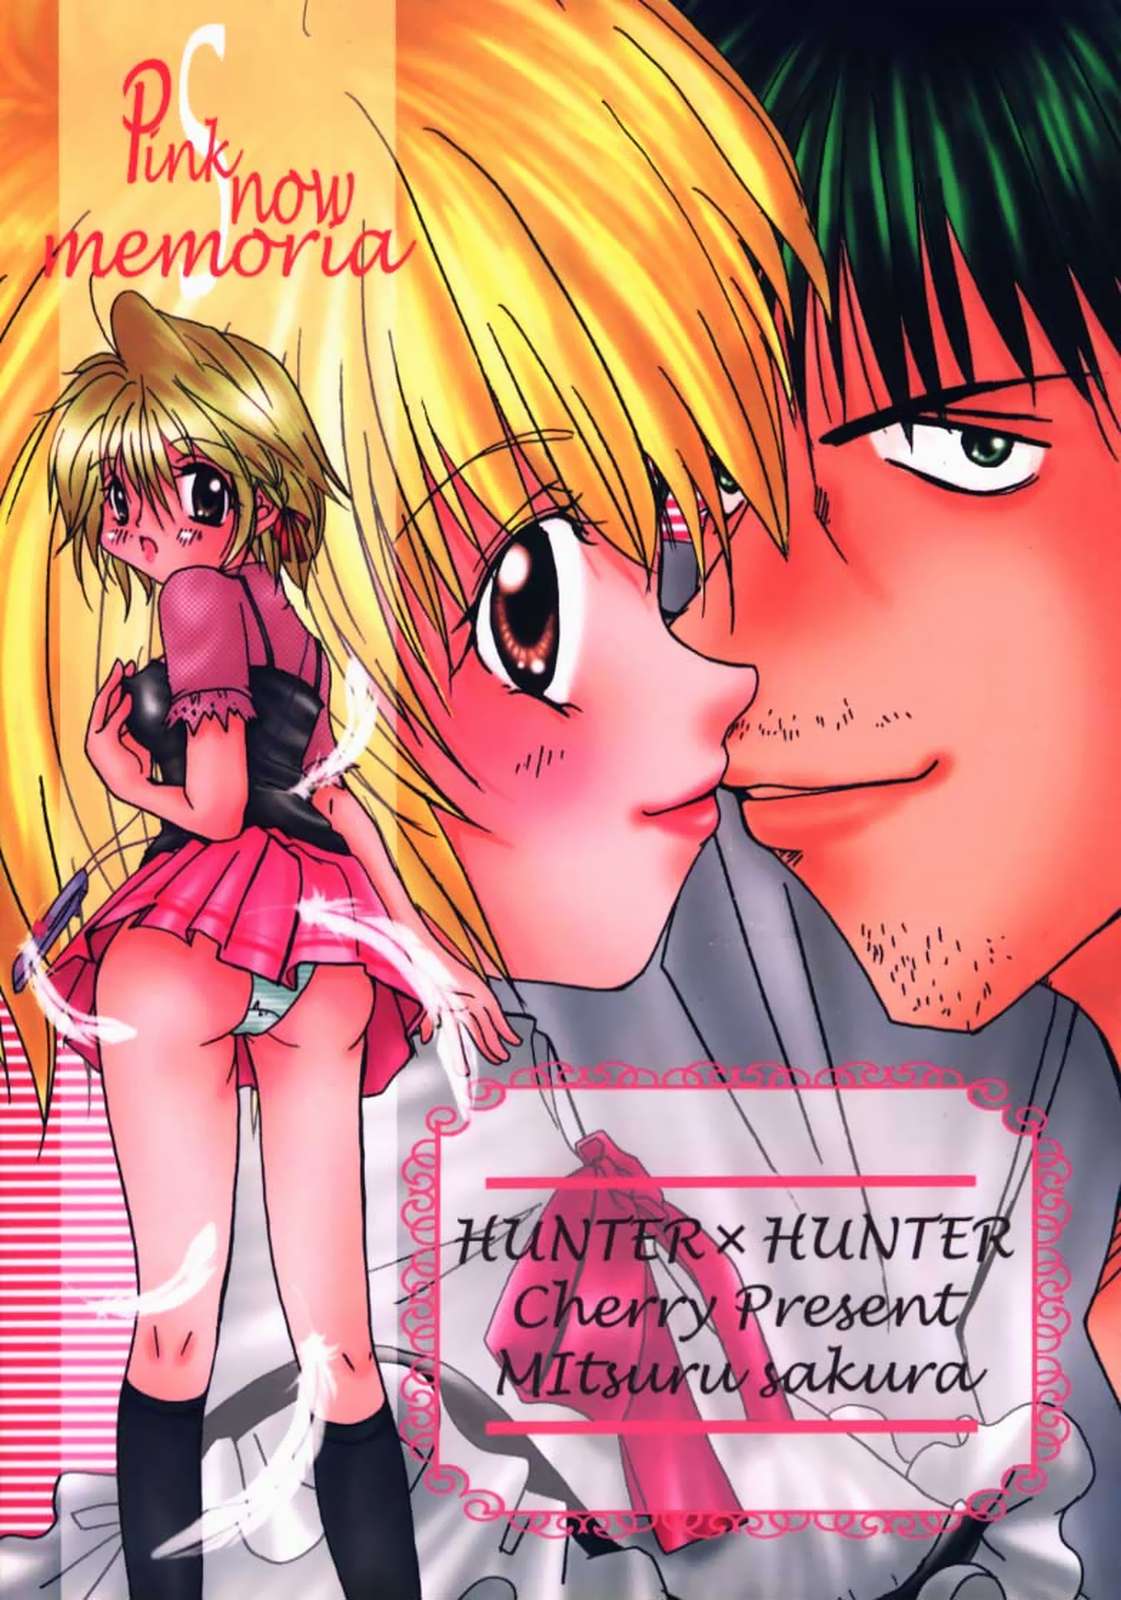 [Sakurara & Cherry (Sakura Mitsuru)] Pink Snow memoria (Hunter x Hunter)english page 39 full